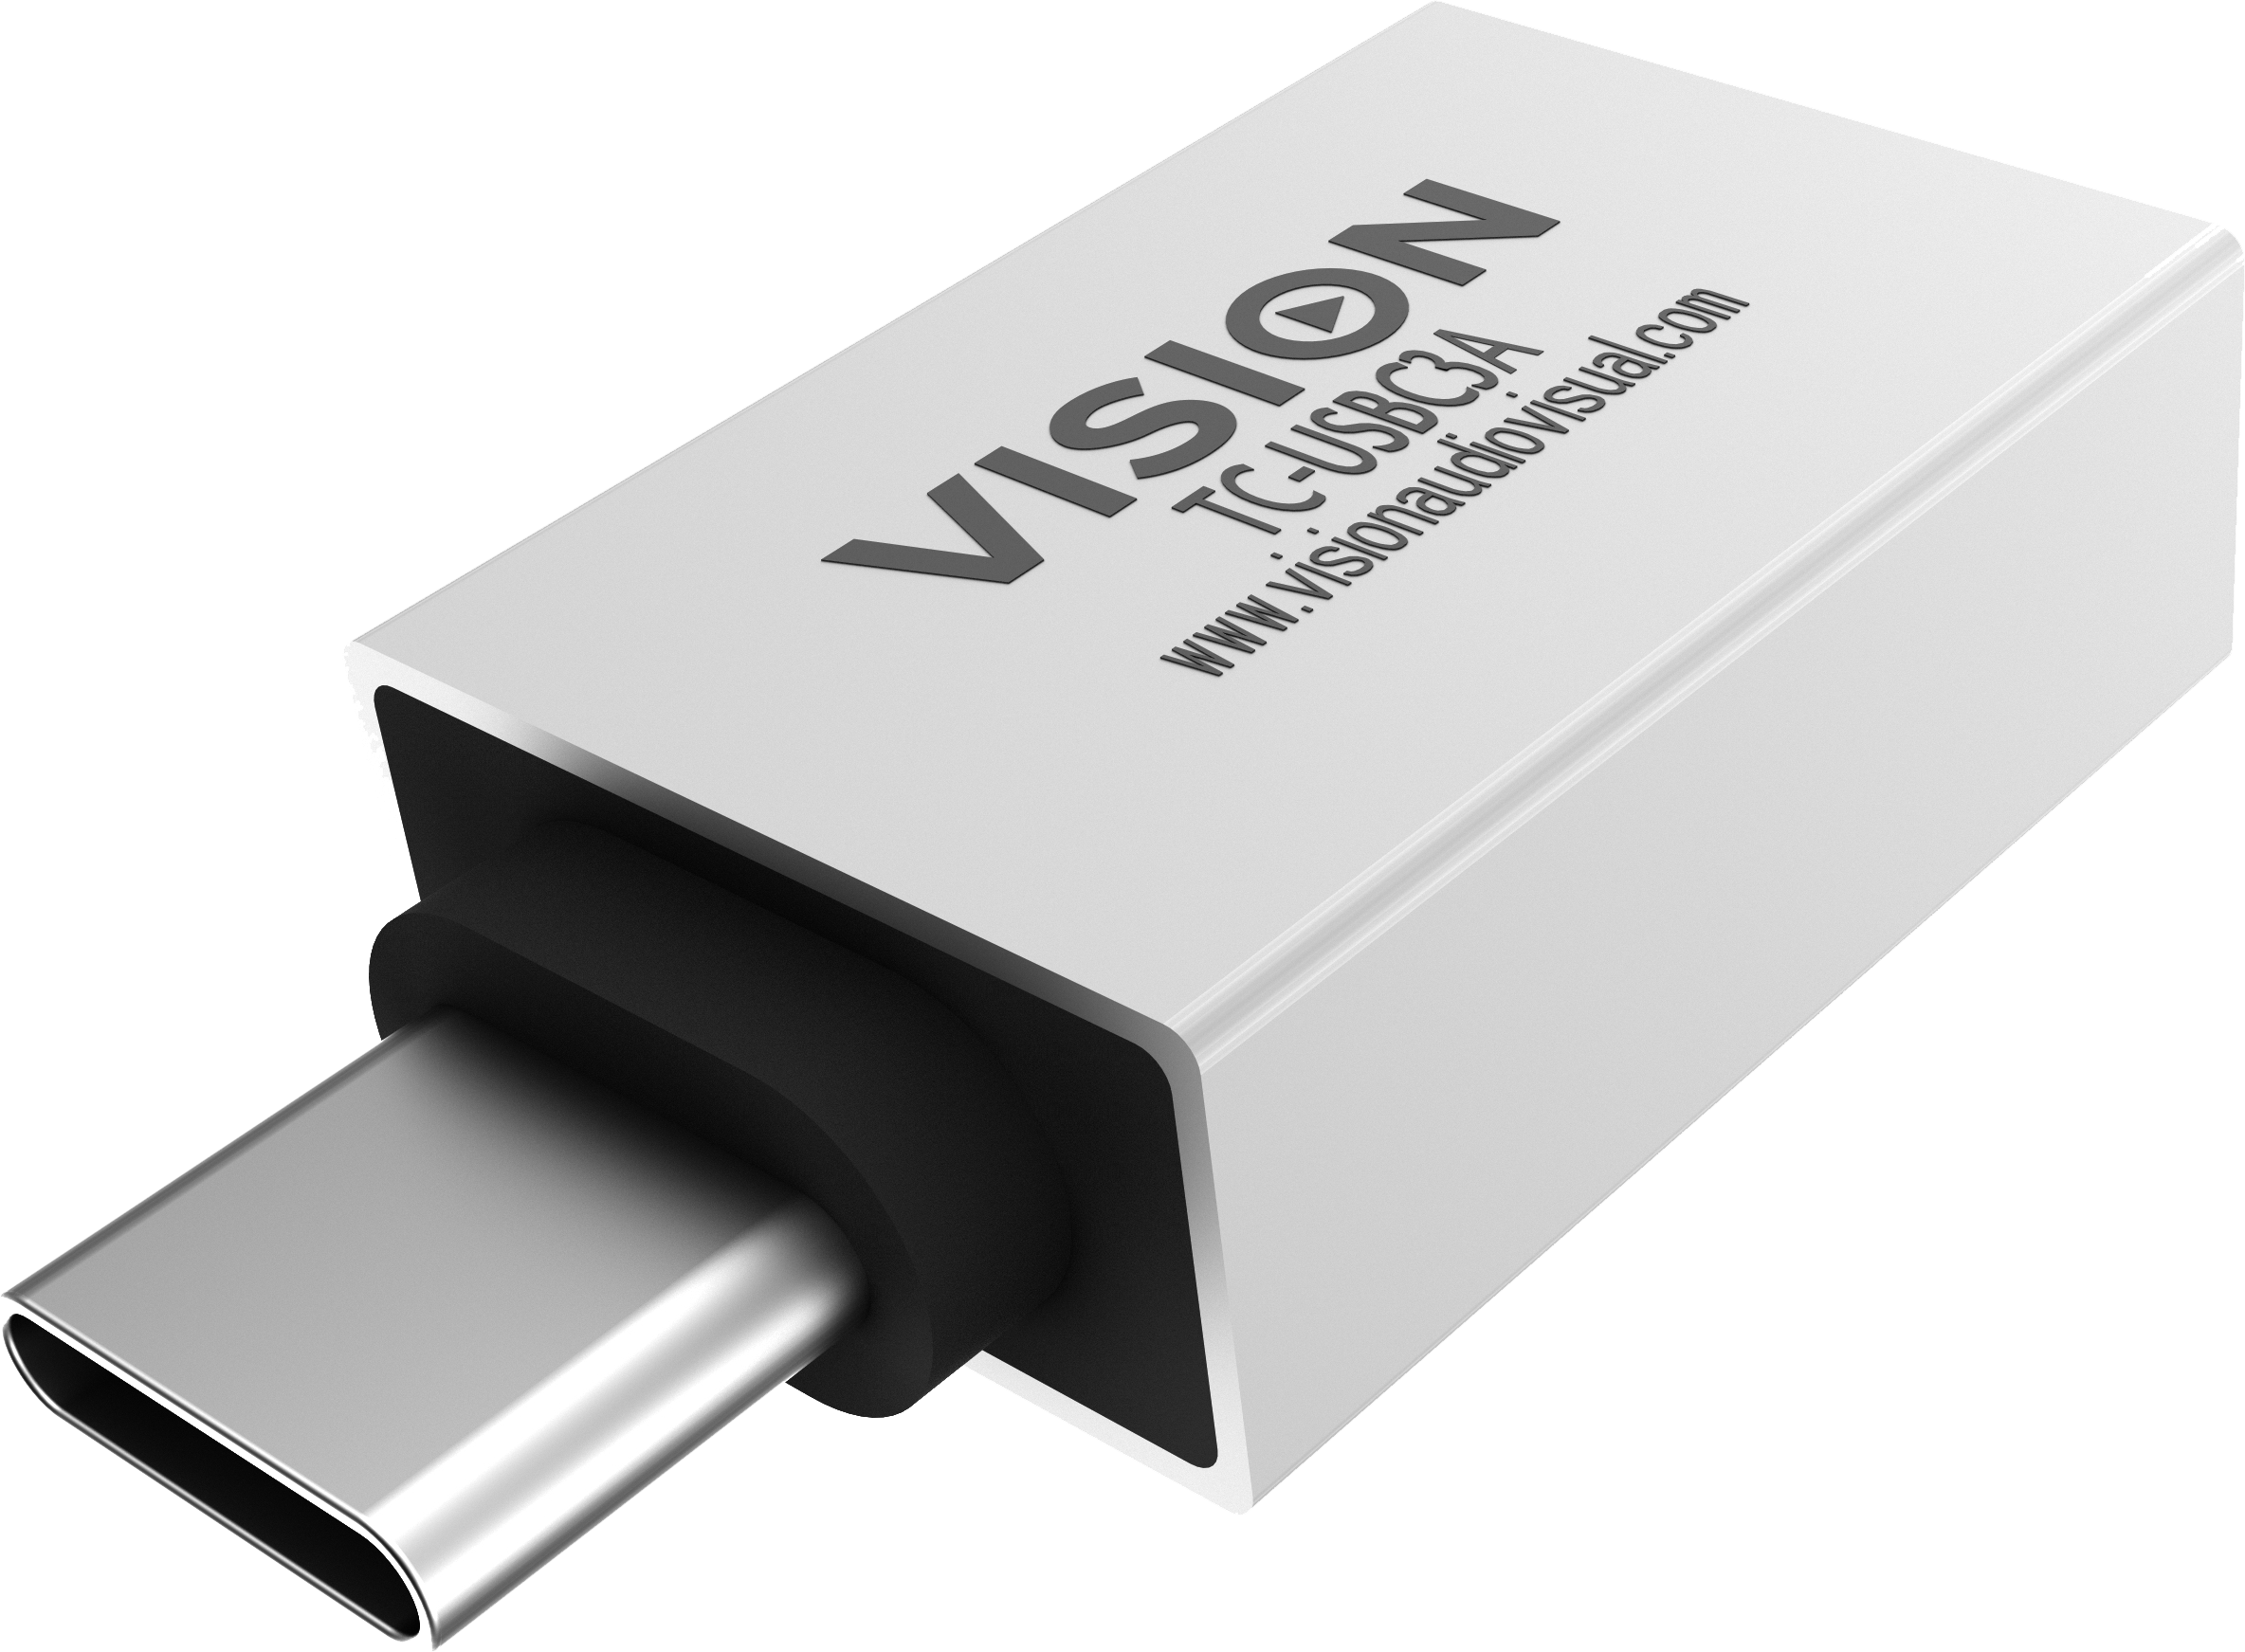 VISION USB-C-zu-USB-A 3.0-Adapter. Zum A USB-C-zu-USB-A 3.0-Adapter. Zum Anschließen an den USB-C-An